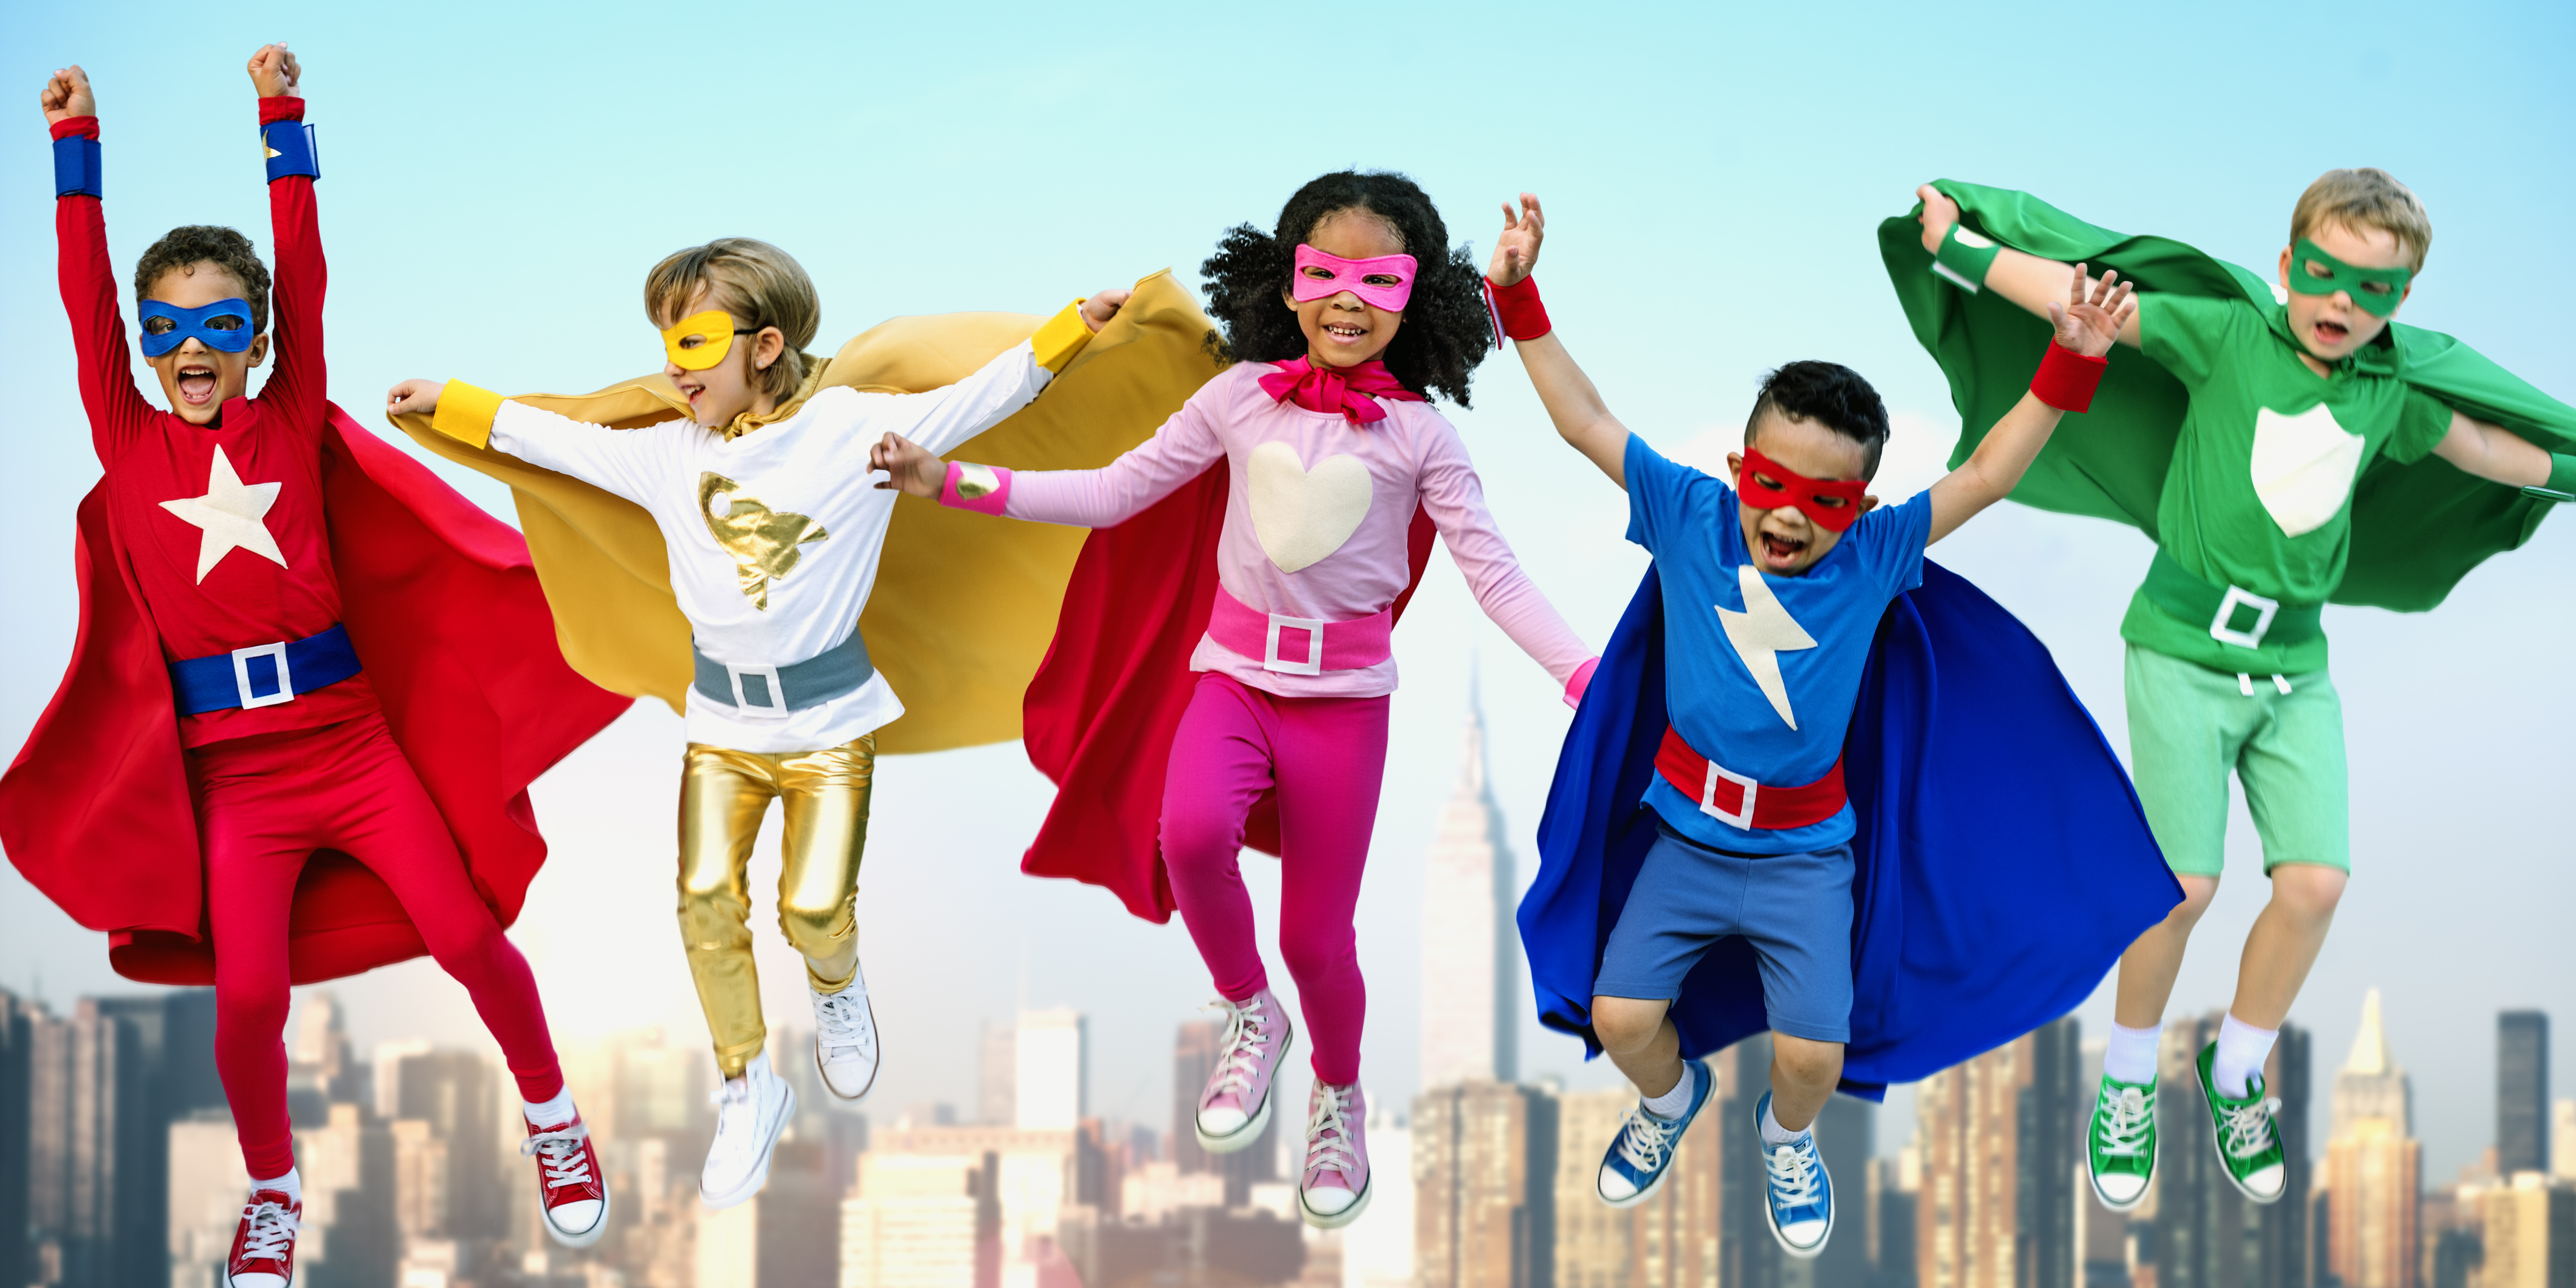 Children dressed as superheroes jump.